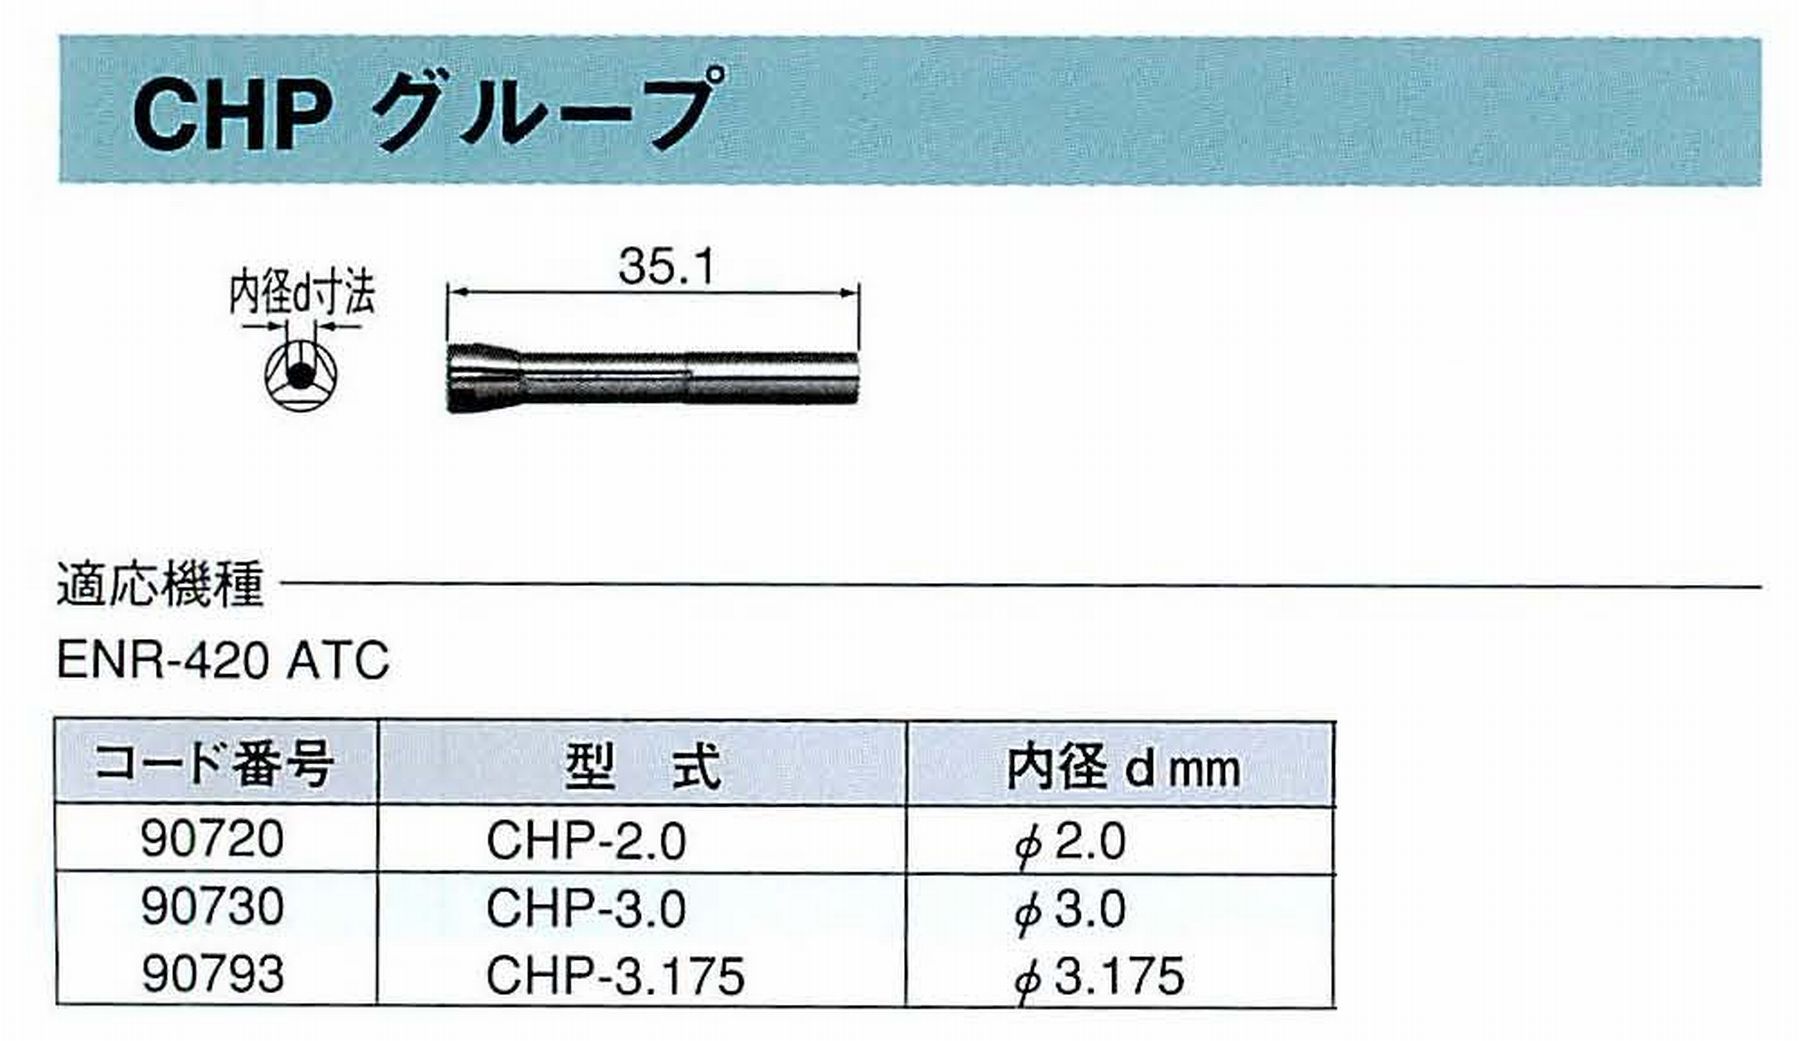 ナカニシ/NAKANISHI コレットチャック コード番号 90793 型式 CHP-3.175 内径:Φ3.175